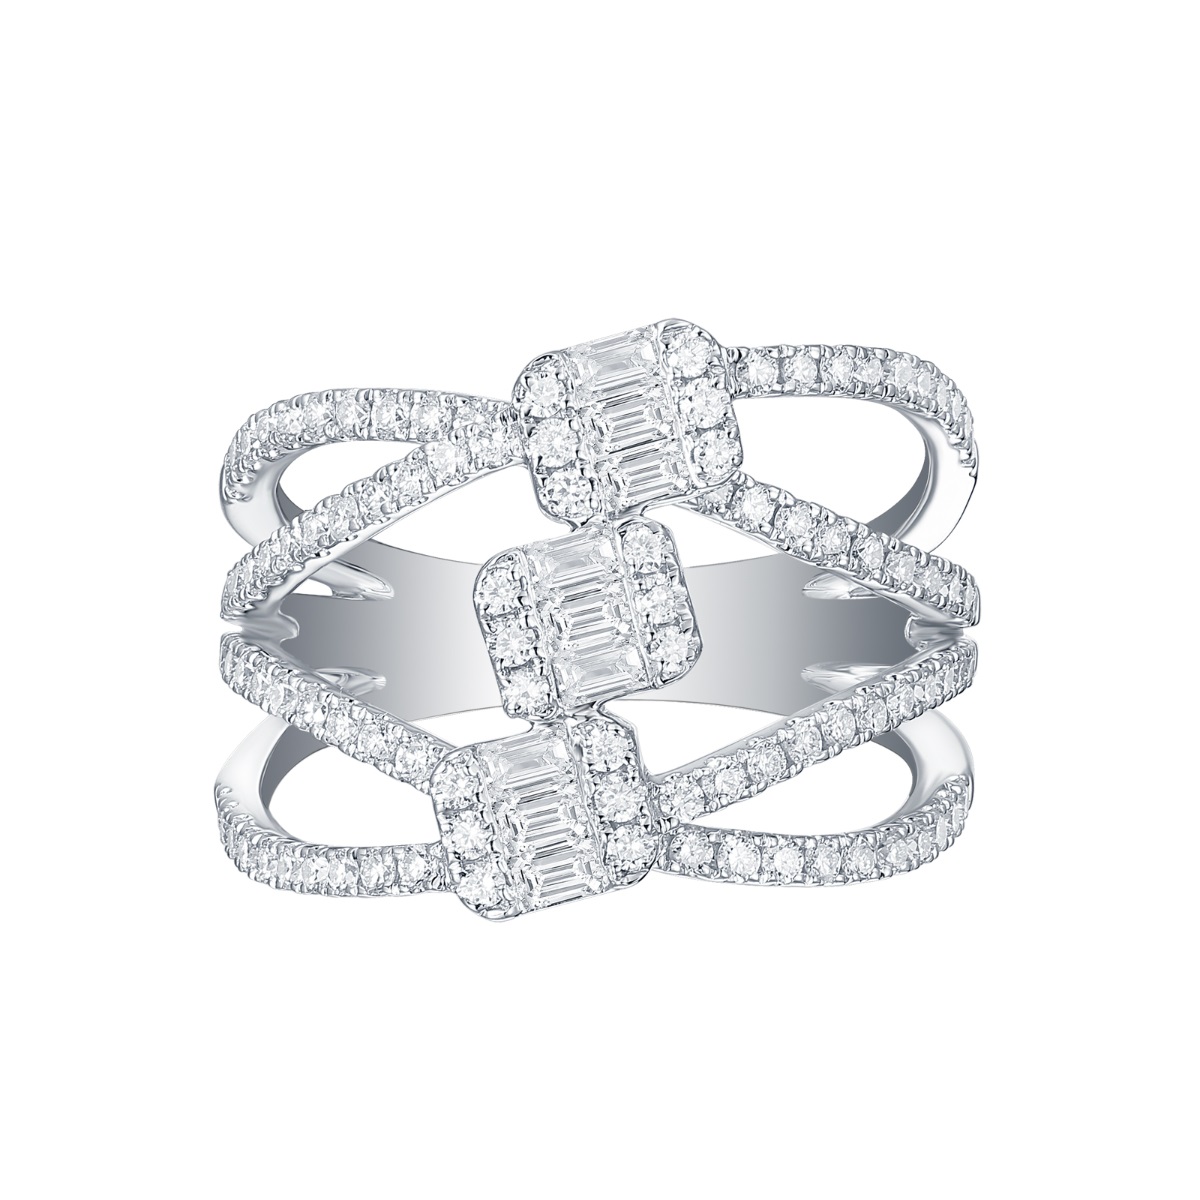 R35228WHT – 18K White Gold Diamond Ring, 1.09 TCW